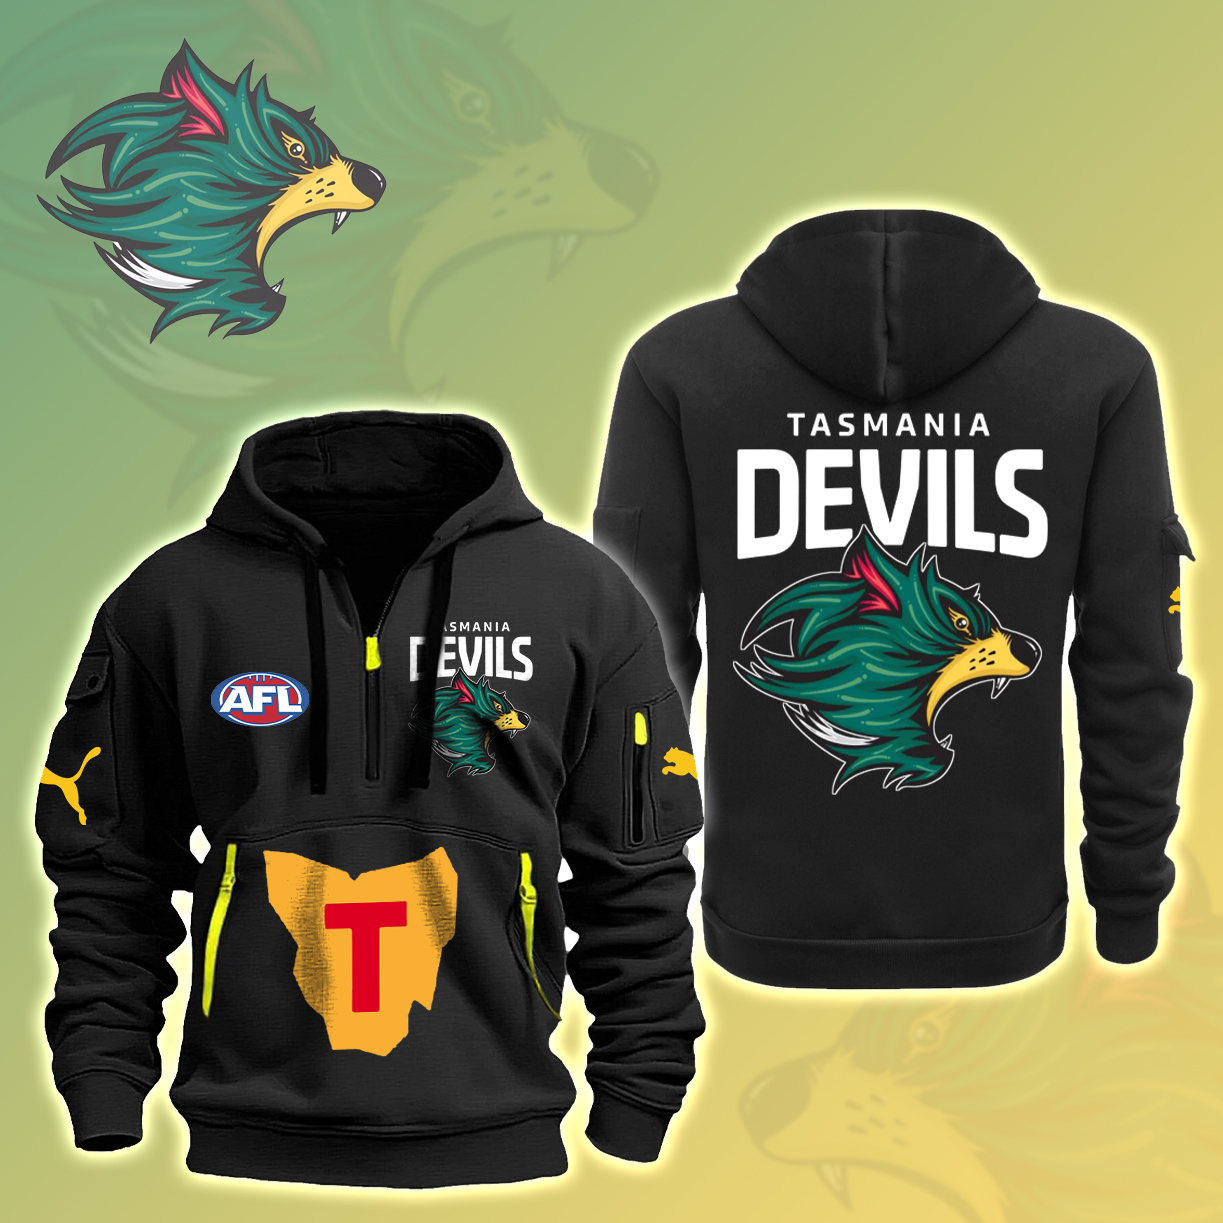 AFL Tasmania Devils Heavy Hoodie